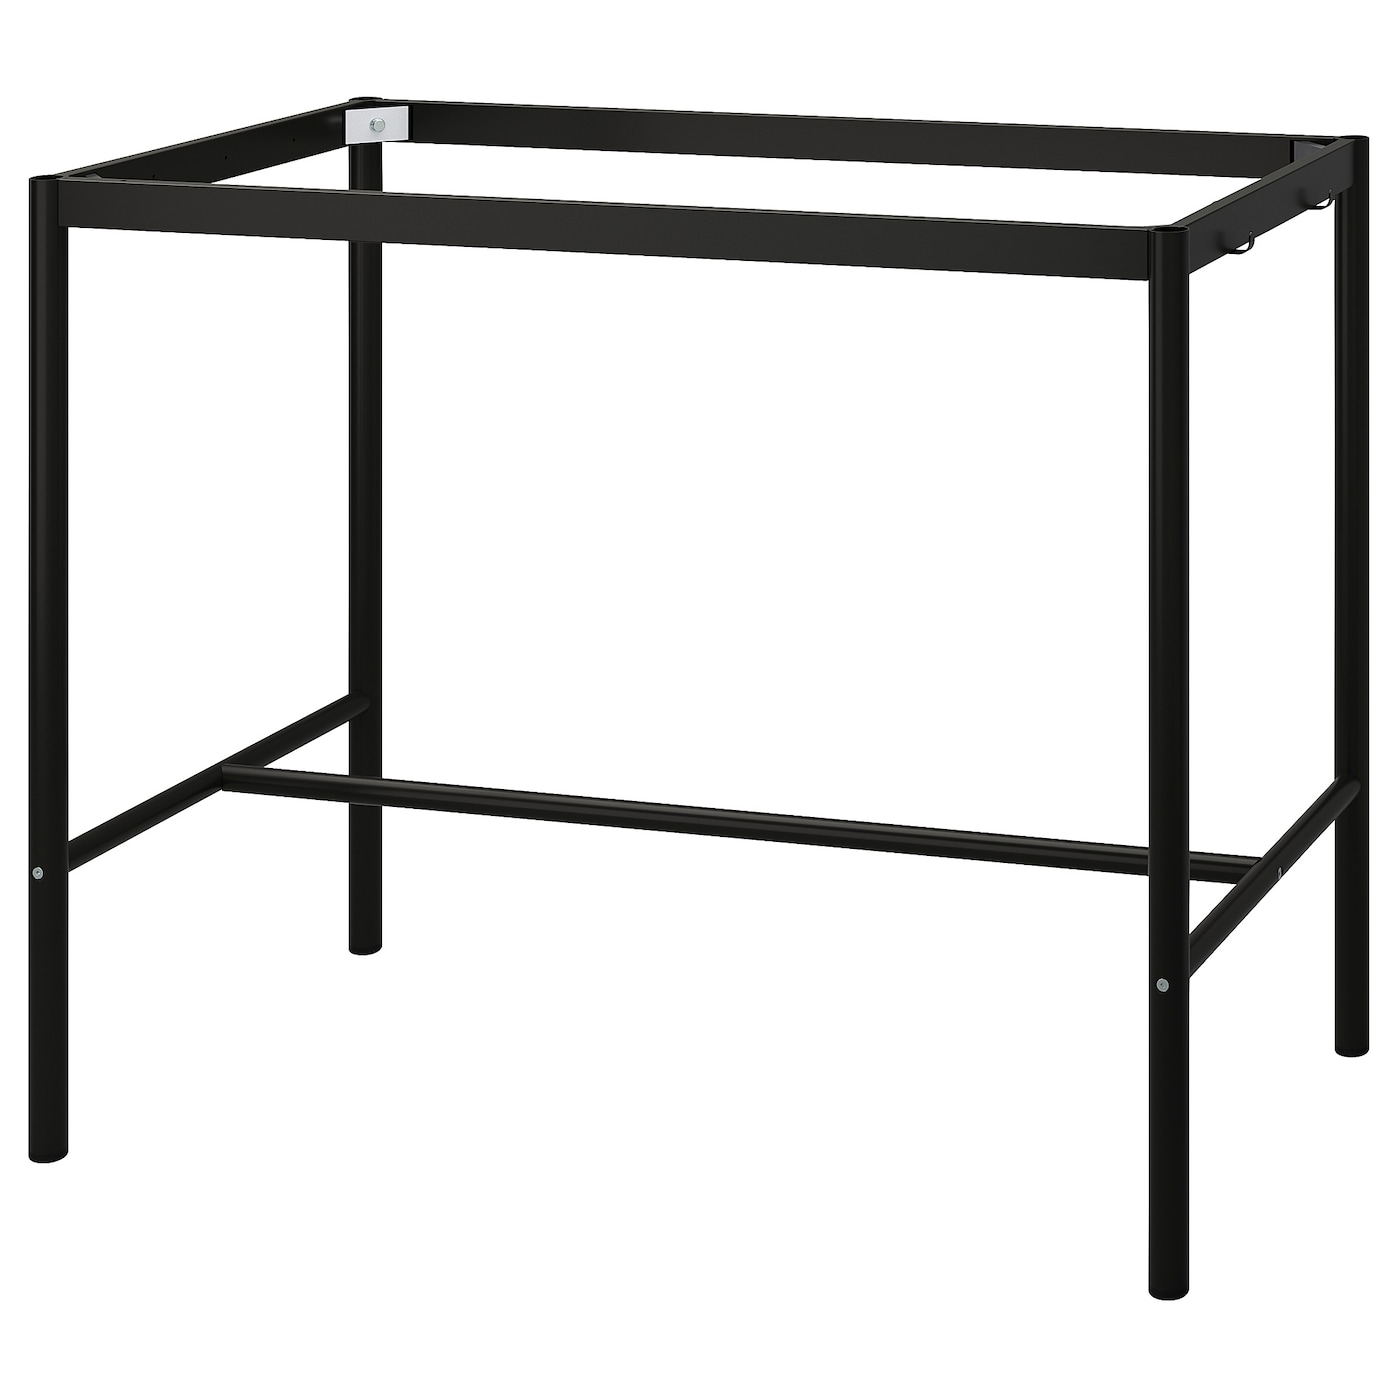 Каркас - TOMMARYD  IKEA/ ТОММАРЮД ИКЕА, 127х120х67 см,  черный